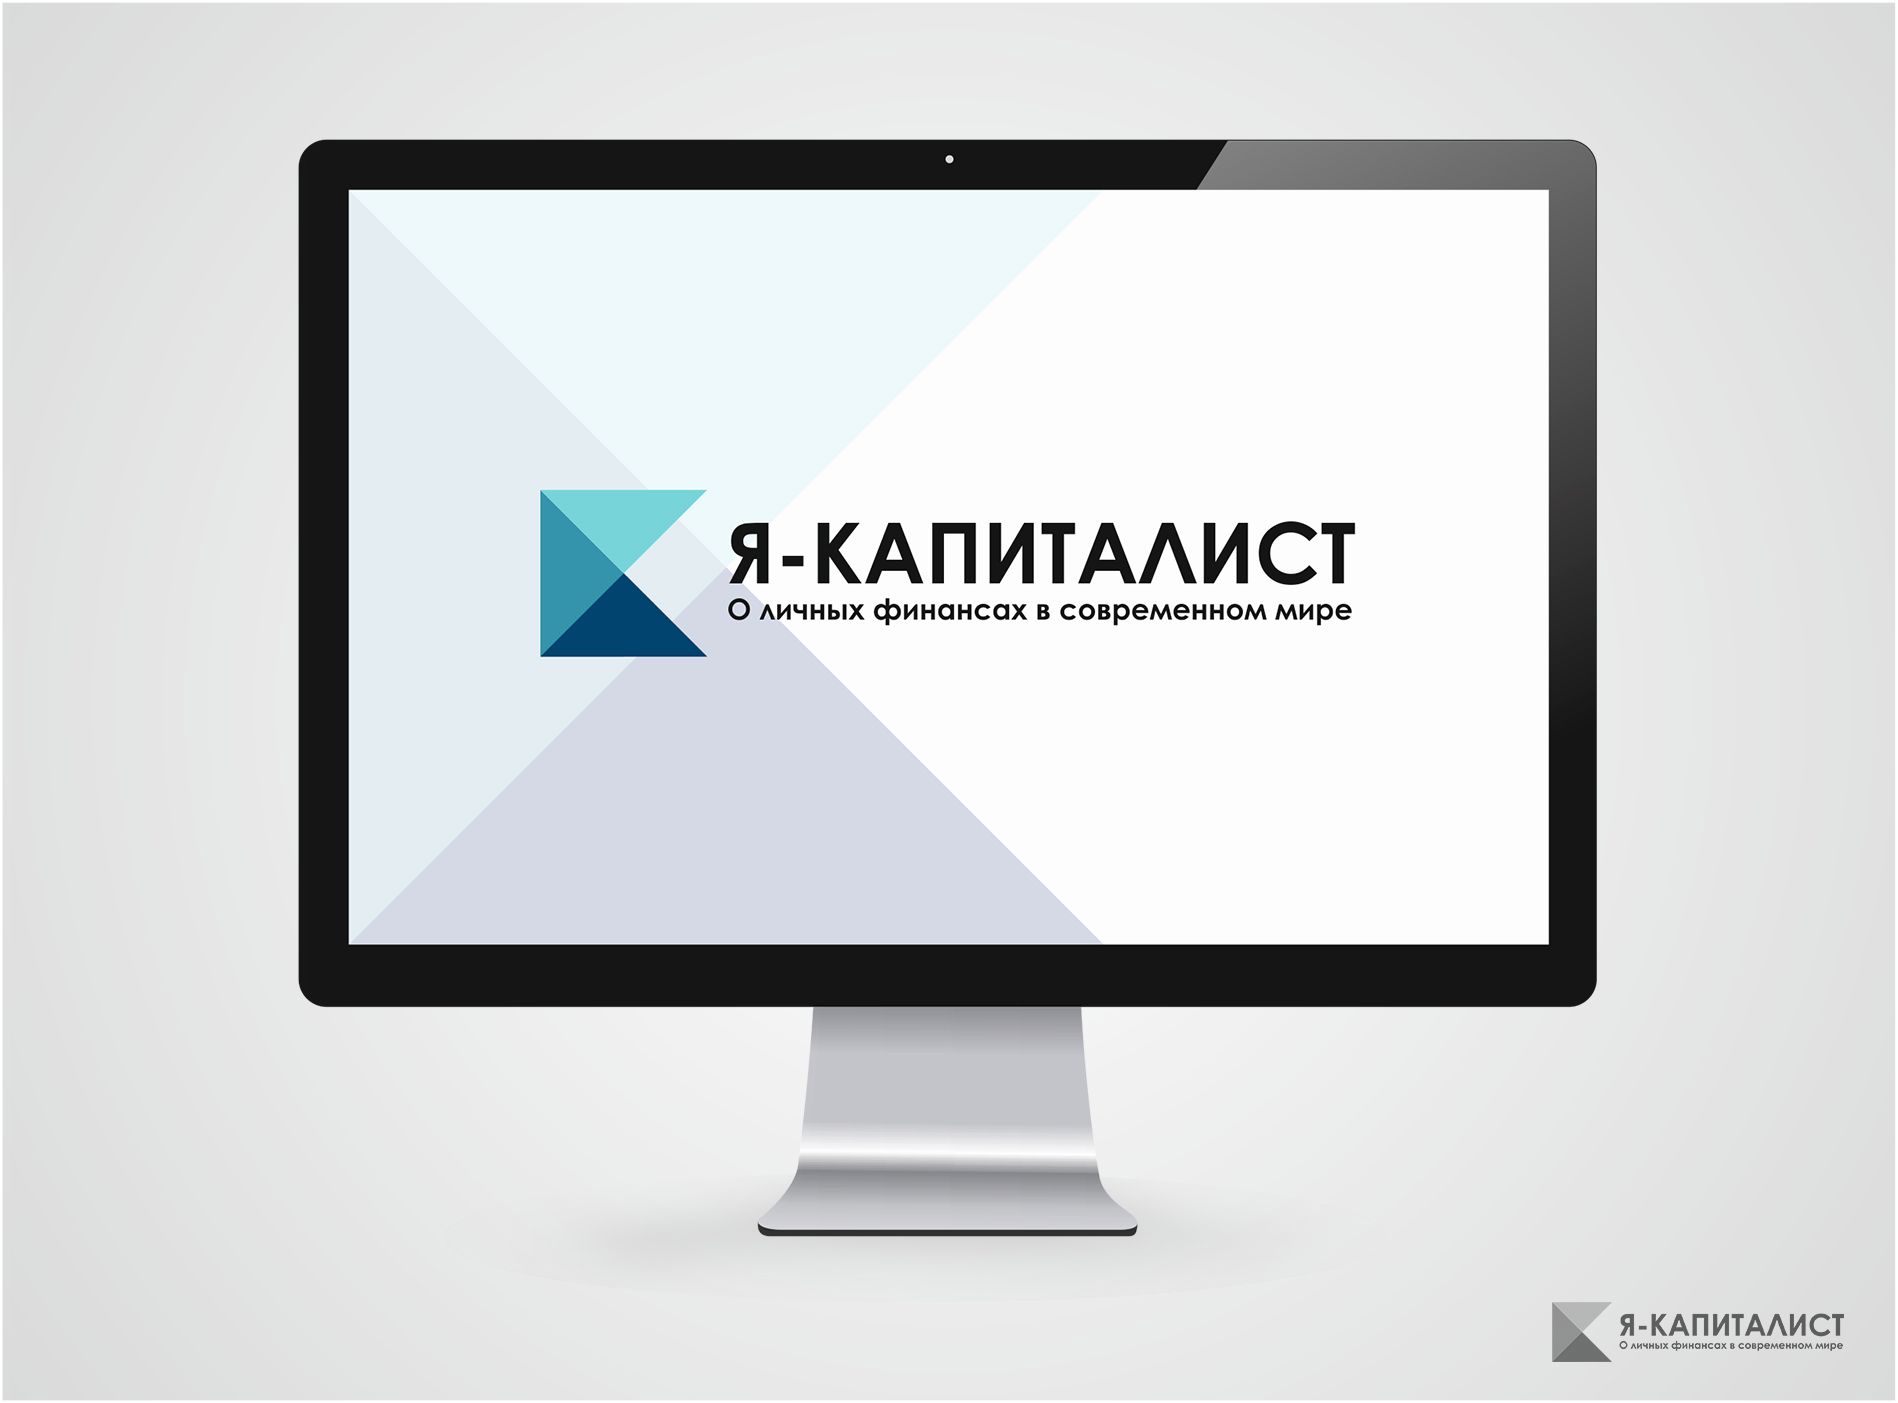 Я капиталист (лого для веб-сайта) - дизайнер AAKuznetcov